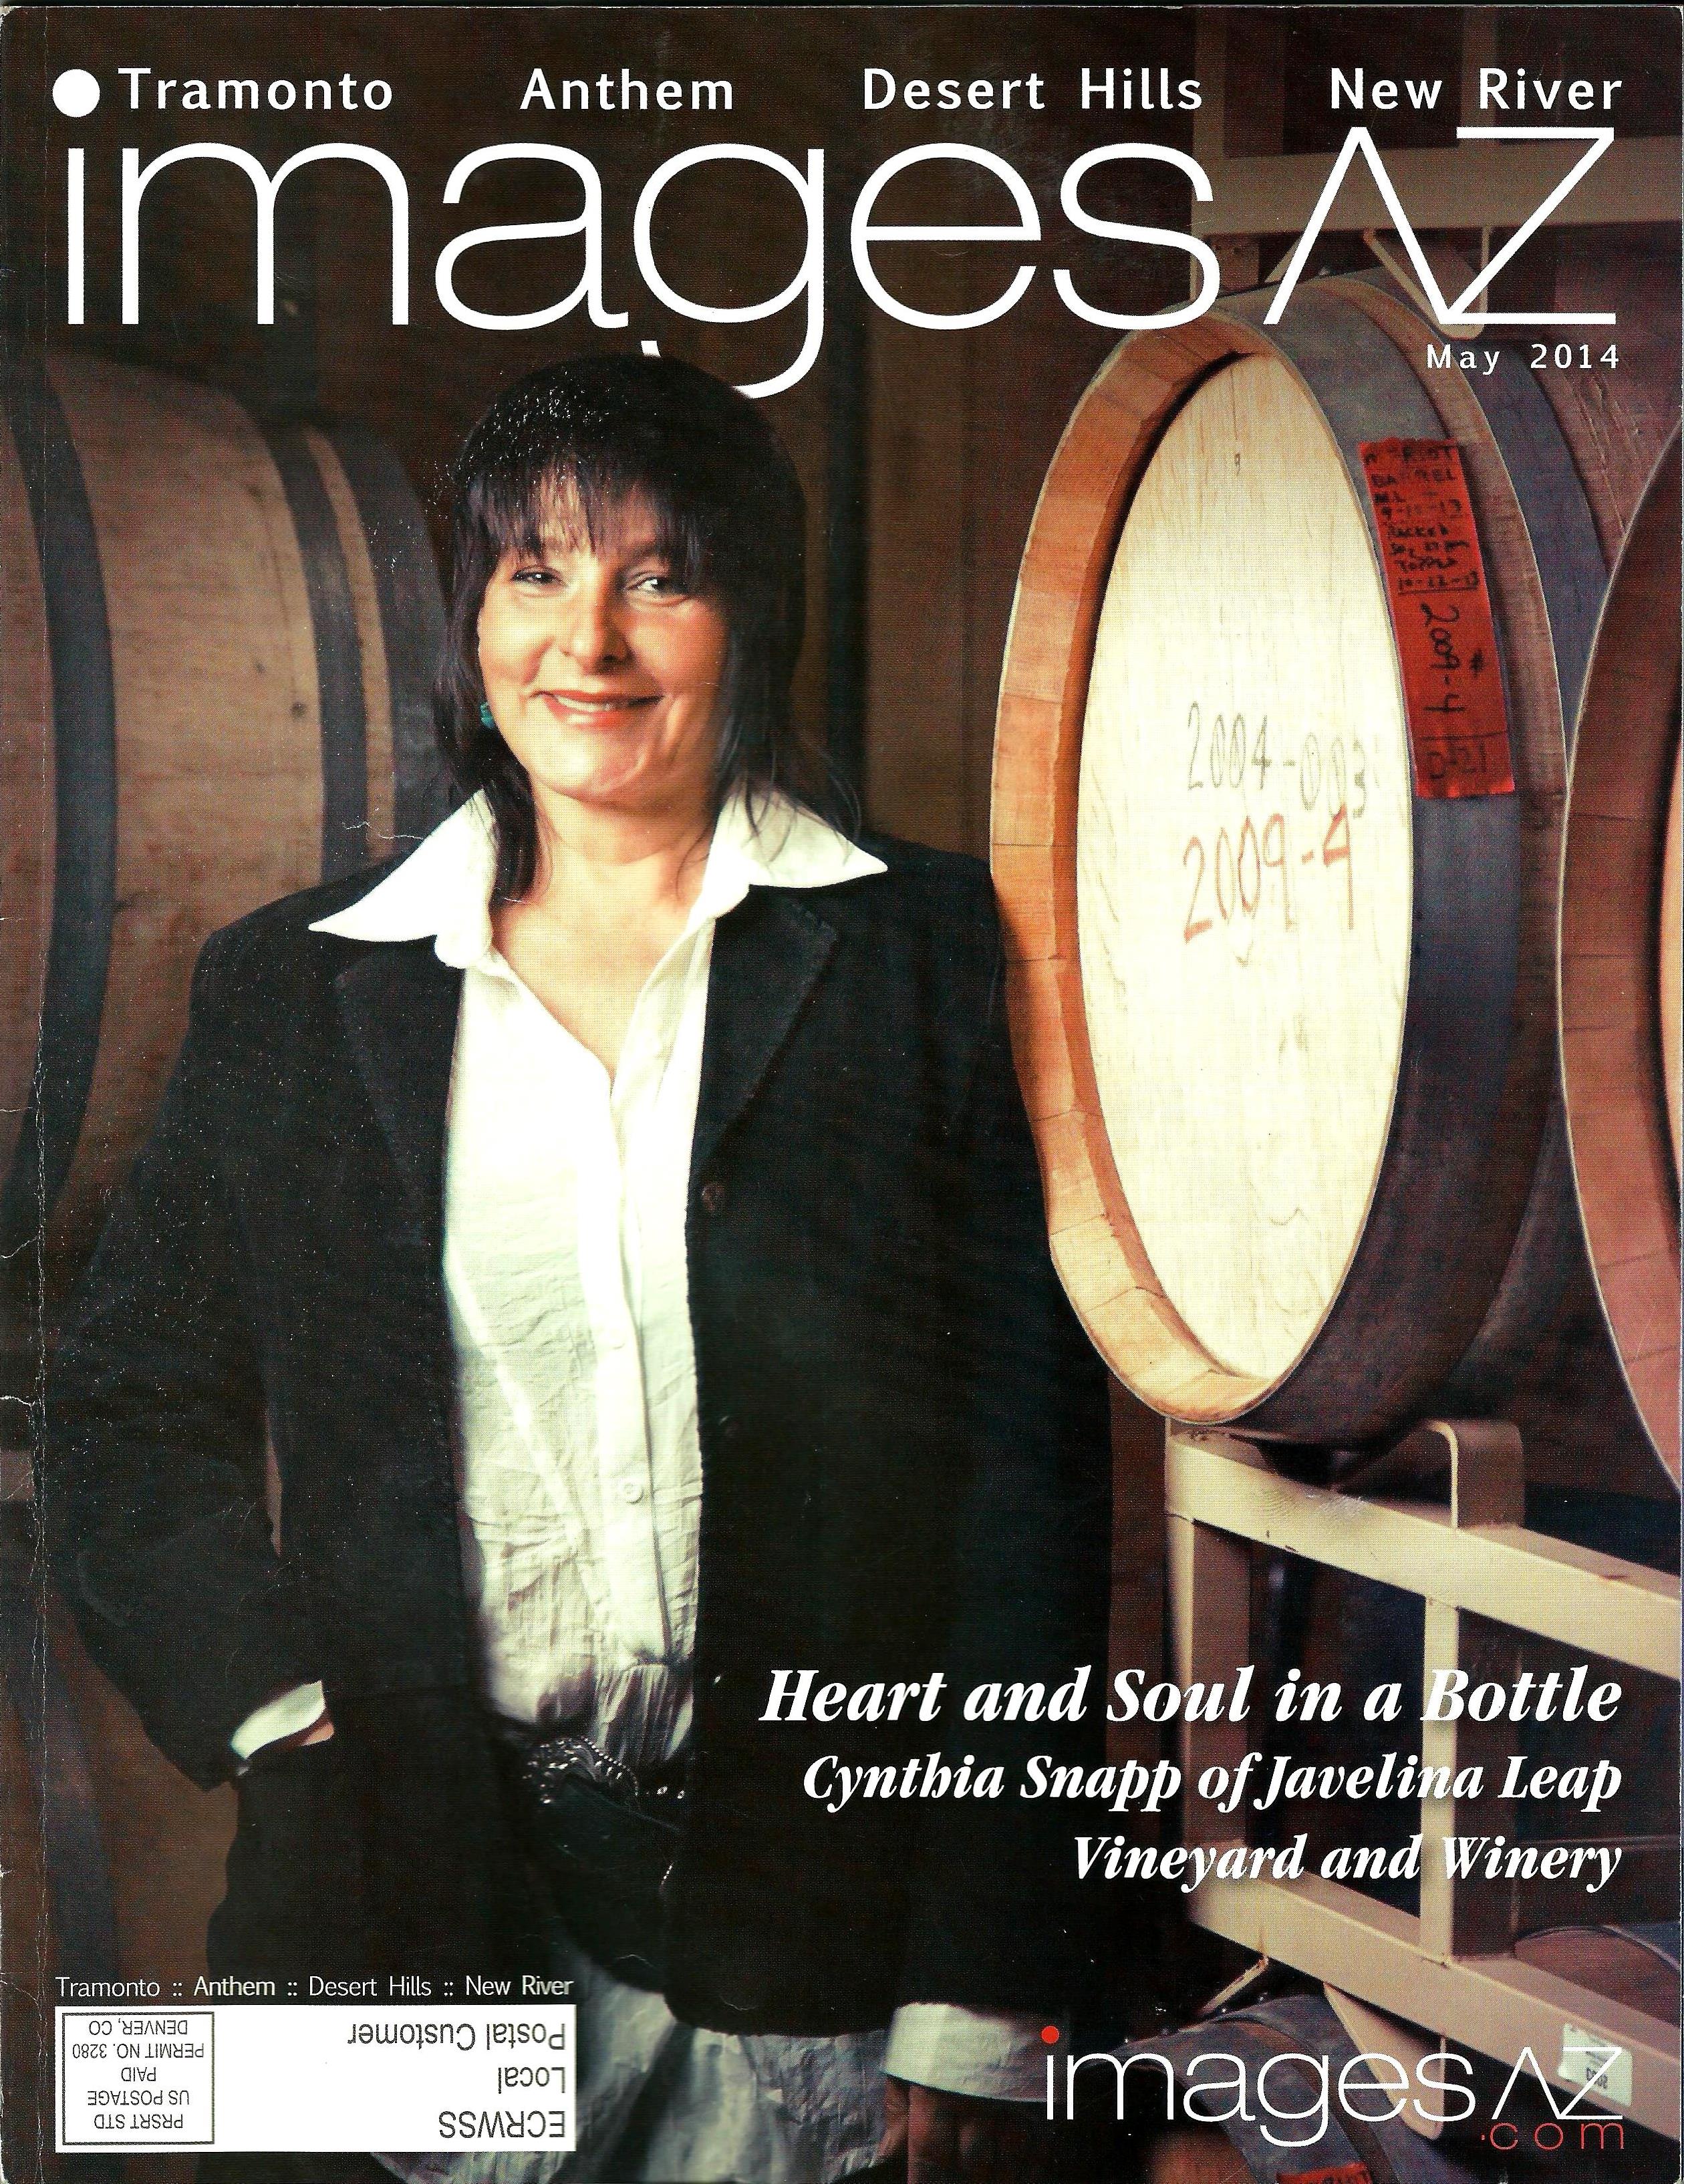 Cynthia Snapp winemaker at Javelina Leap